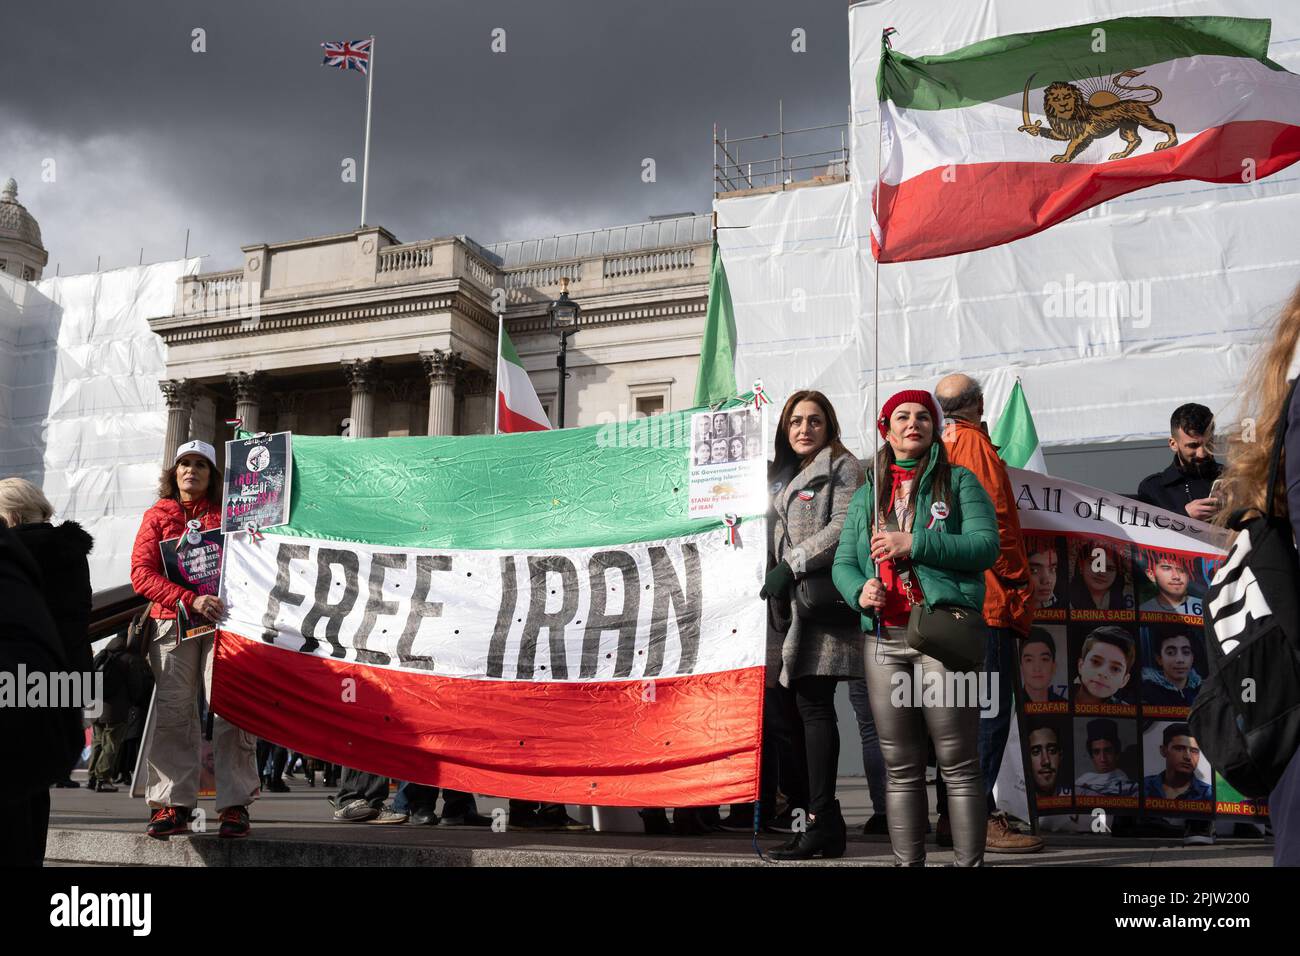 Les Britanniques-Iraniens et les partisans se sont rassemblés sur la place Tralfalgar pour protester contre la République islamique au pouvoir en Iran et contre la conduite de l'IRGC. Le 16 septembre 2022, Mahsa Amini, une iranienne de 22 ans, également connue sous le nom de Jina Amini, est décédée des blessures qu'elle a reçues alors qu'elle était sous la garde de la police de moralité religieuse du gouvernement iranien. La mort d'Amini a entraîné une série de manifestations à travers l'Iran contre la république islamique au pouvoir. Banque D'Images